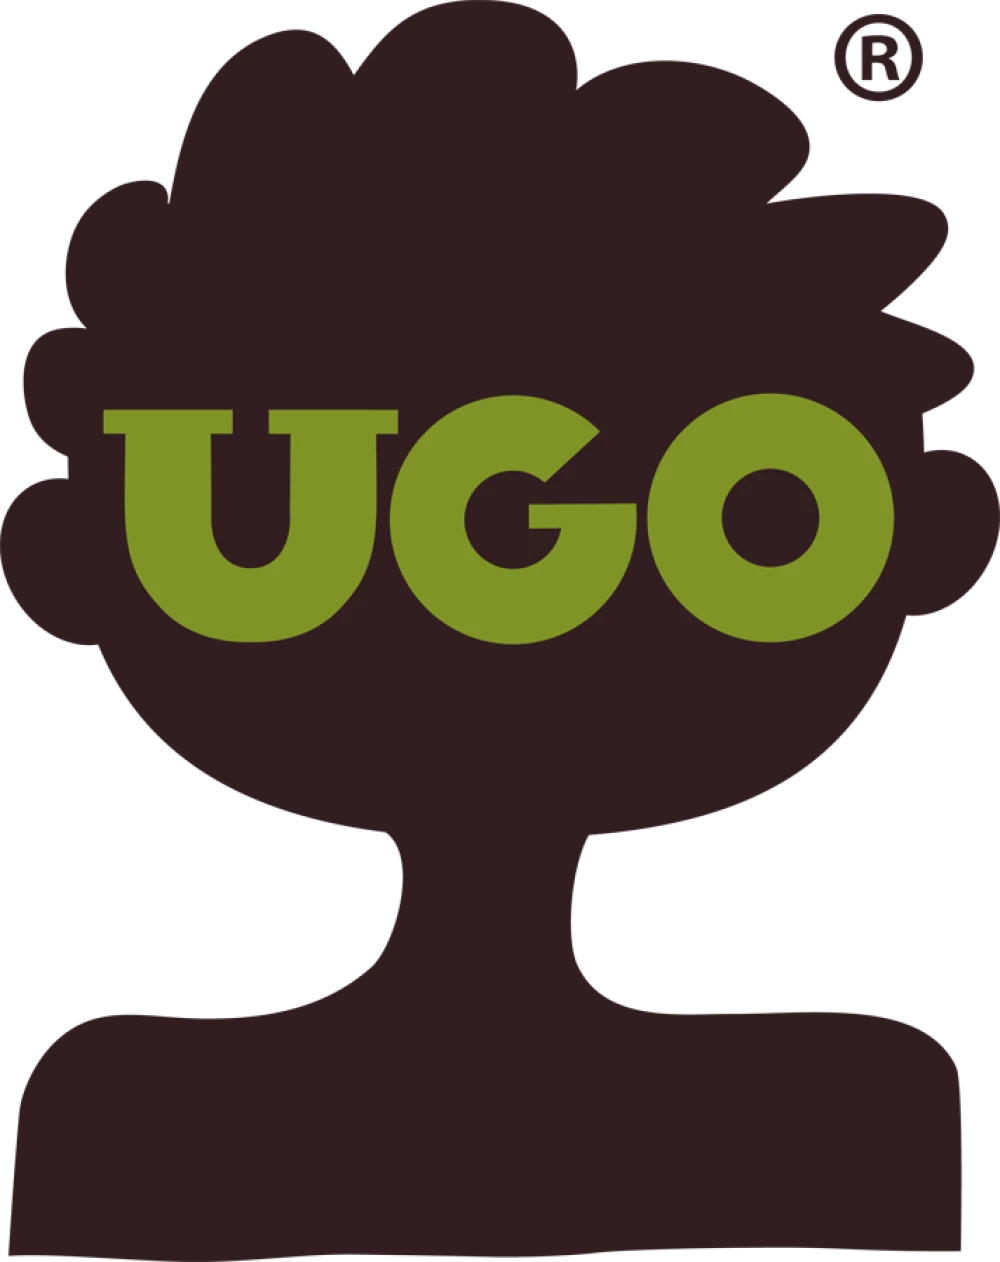 Ugo